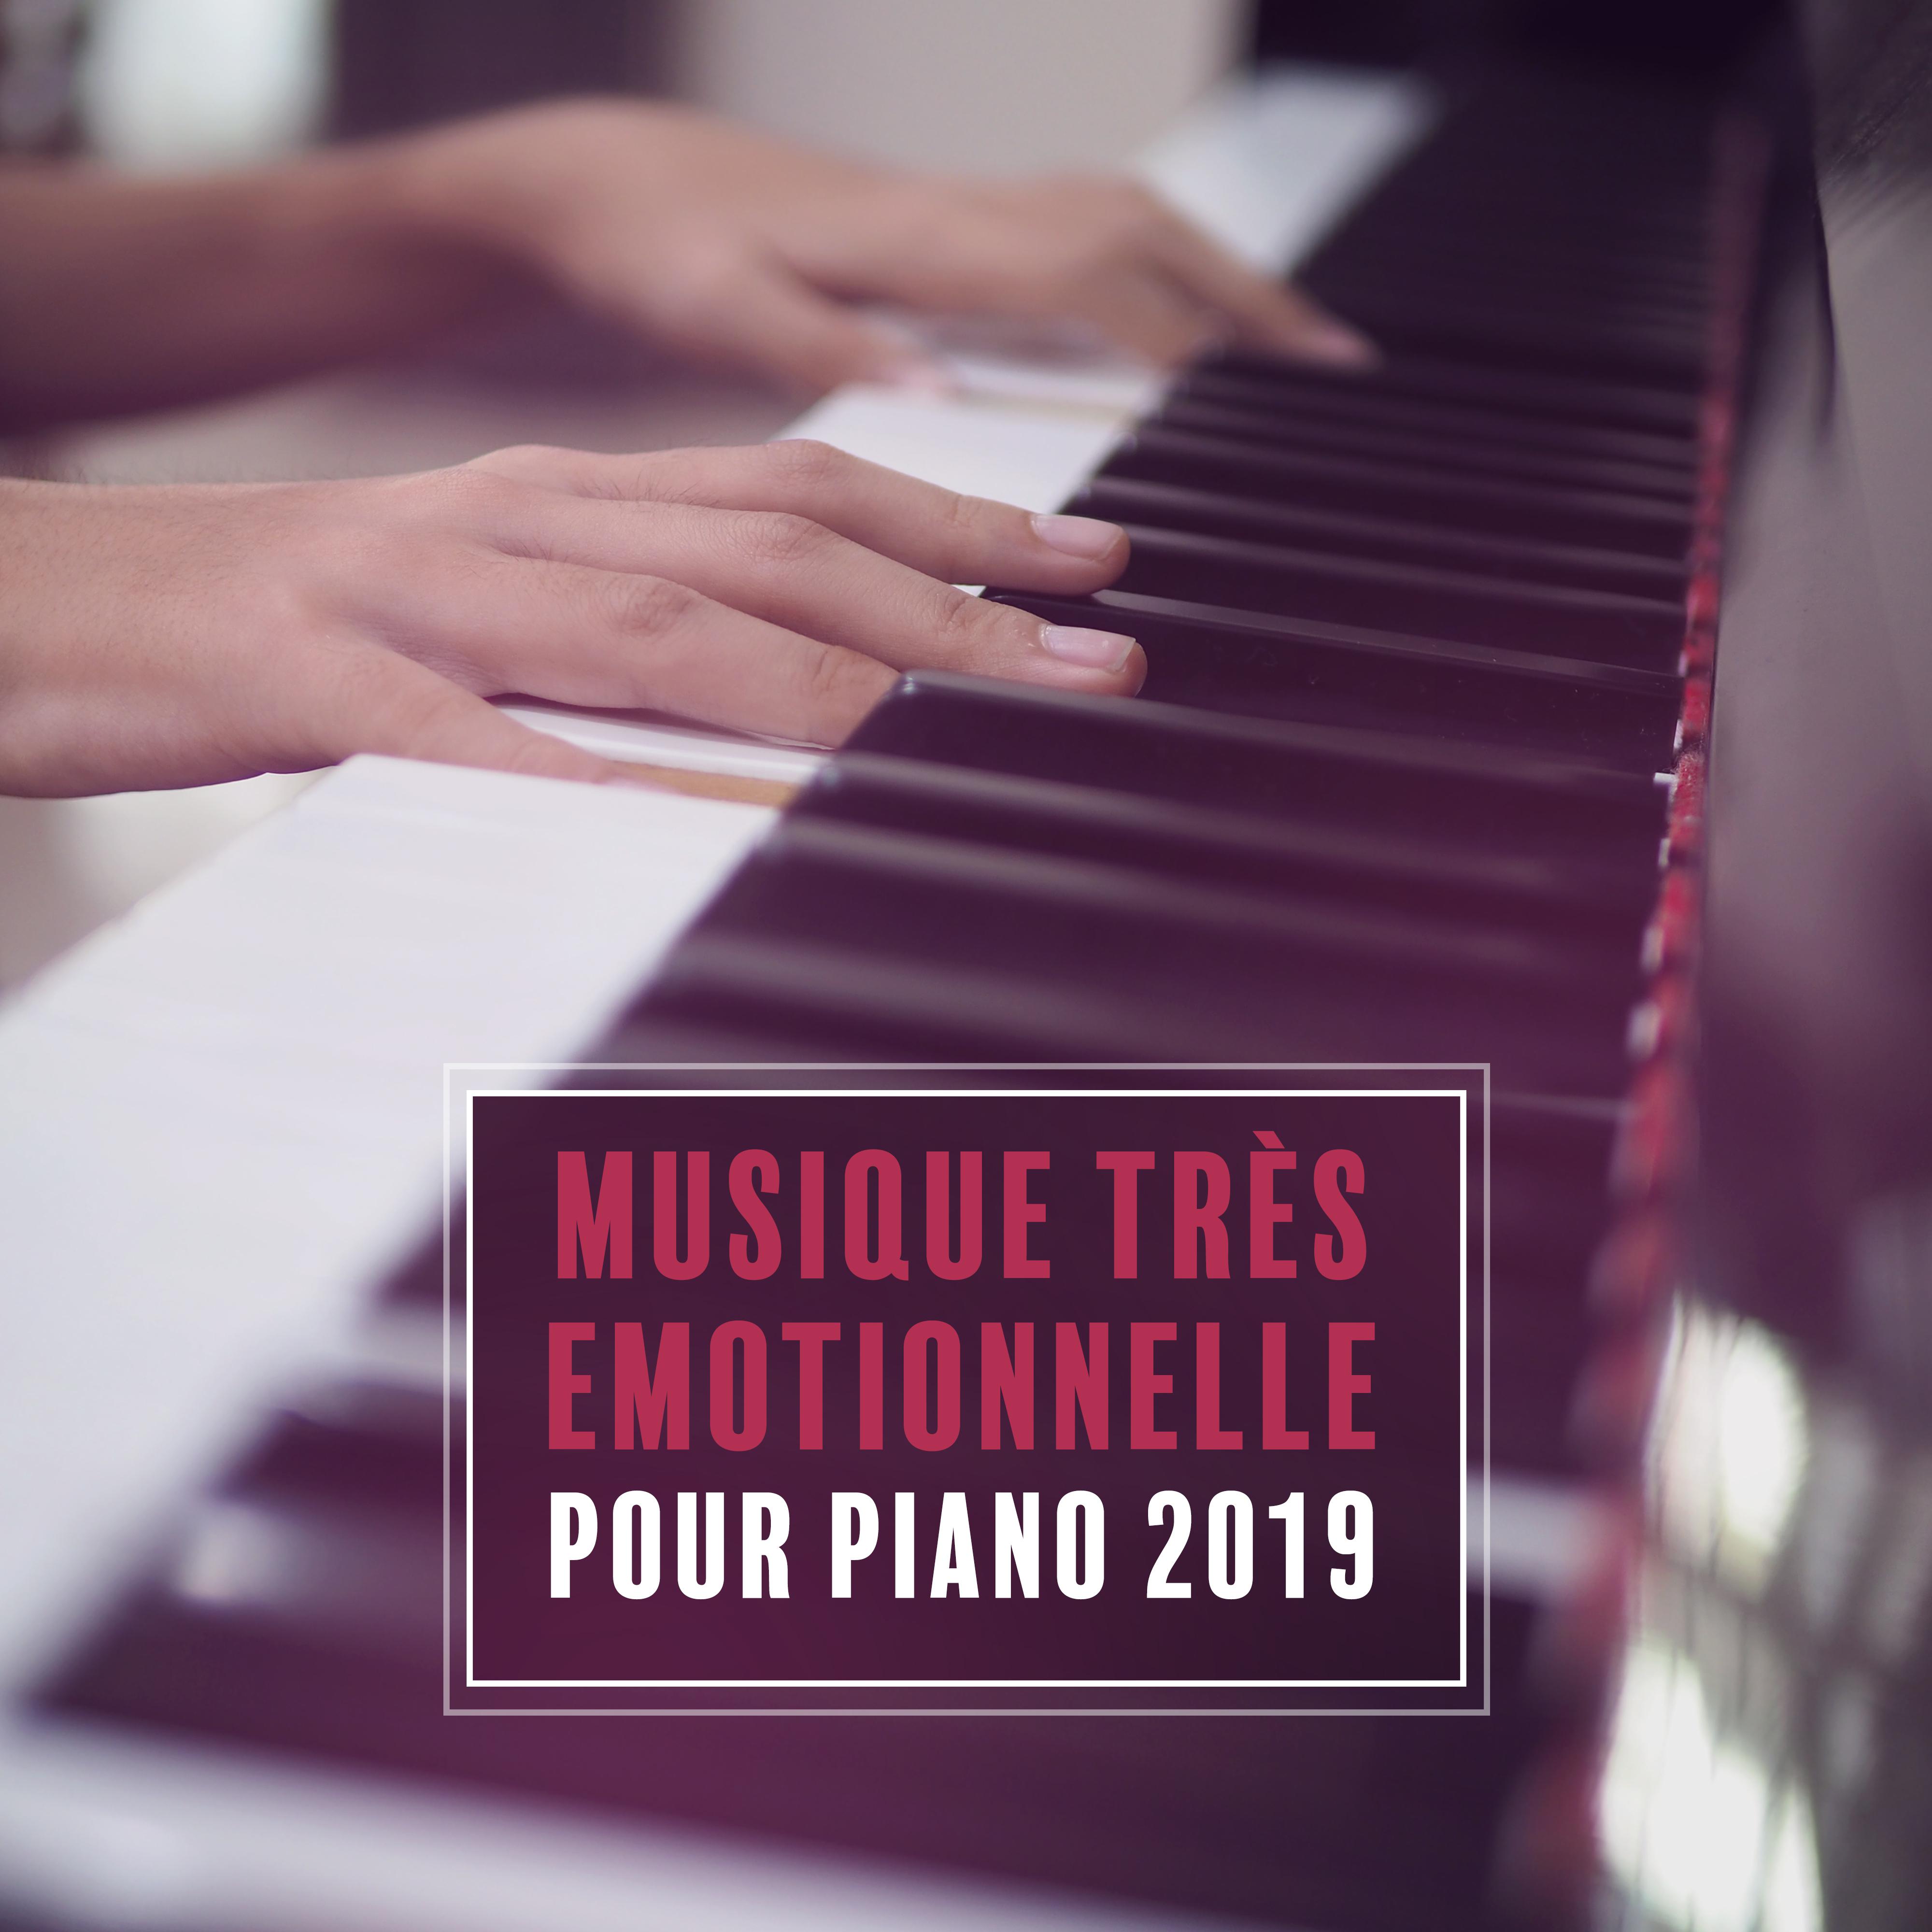 Musique Tre s Emotionnelle pour Piano 2019